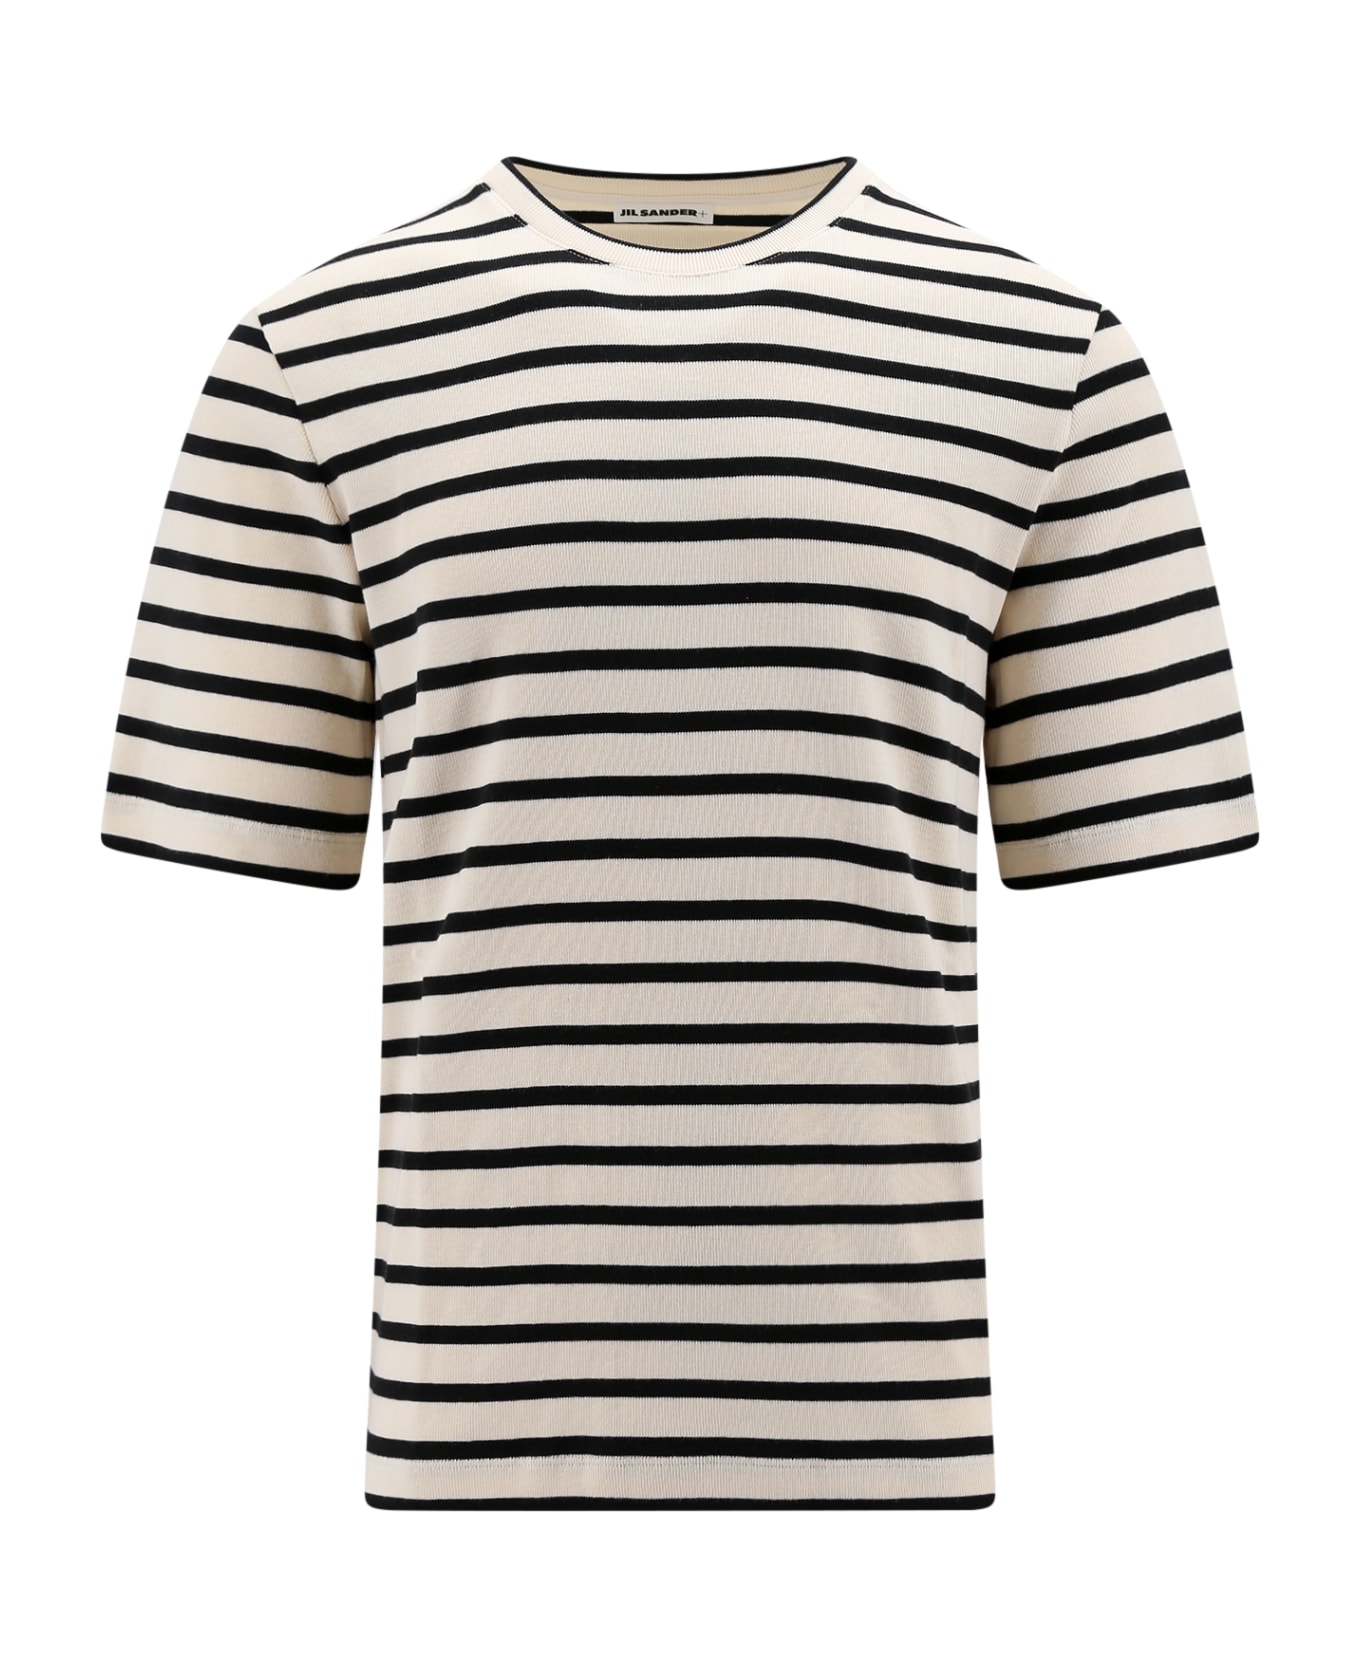 Jil Sander T-shirt - NEUTRALS/BLACK